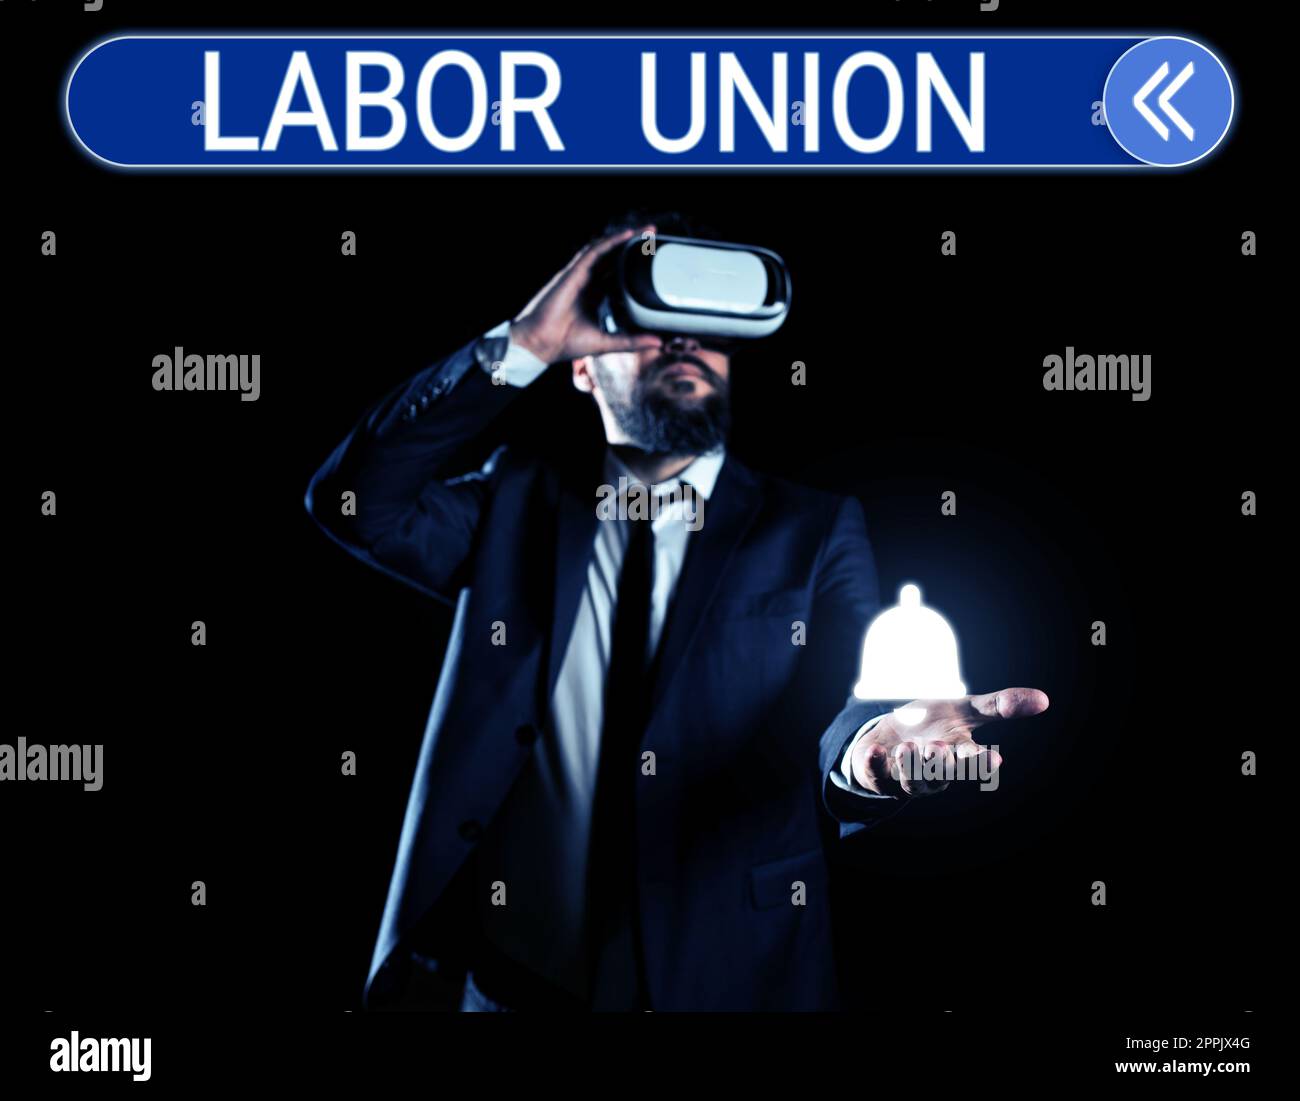 Textunterschrift zur Darstellung der Gewerkschaft. Konzept, das Regeln in Bezug auf Rechte und Pflichten der Arbeitnehmer bedeutet Stockfoto